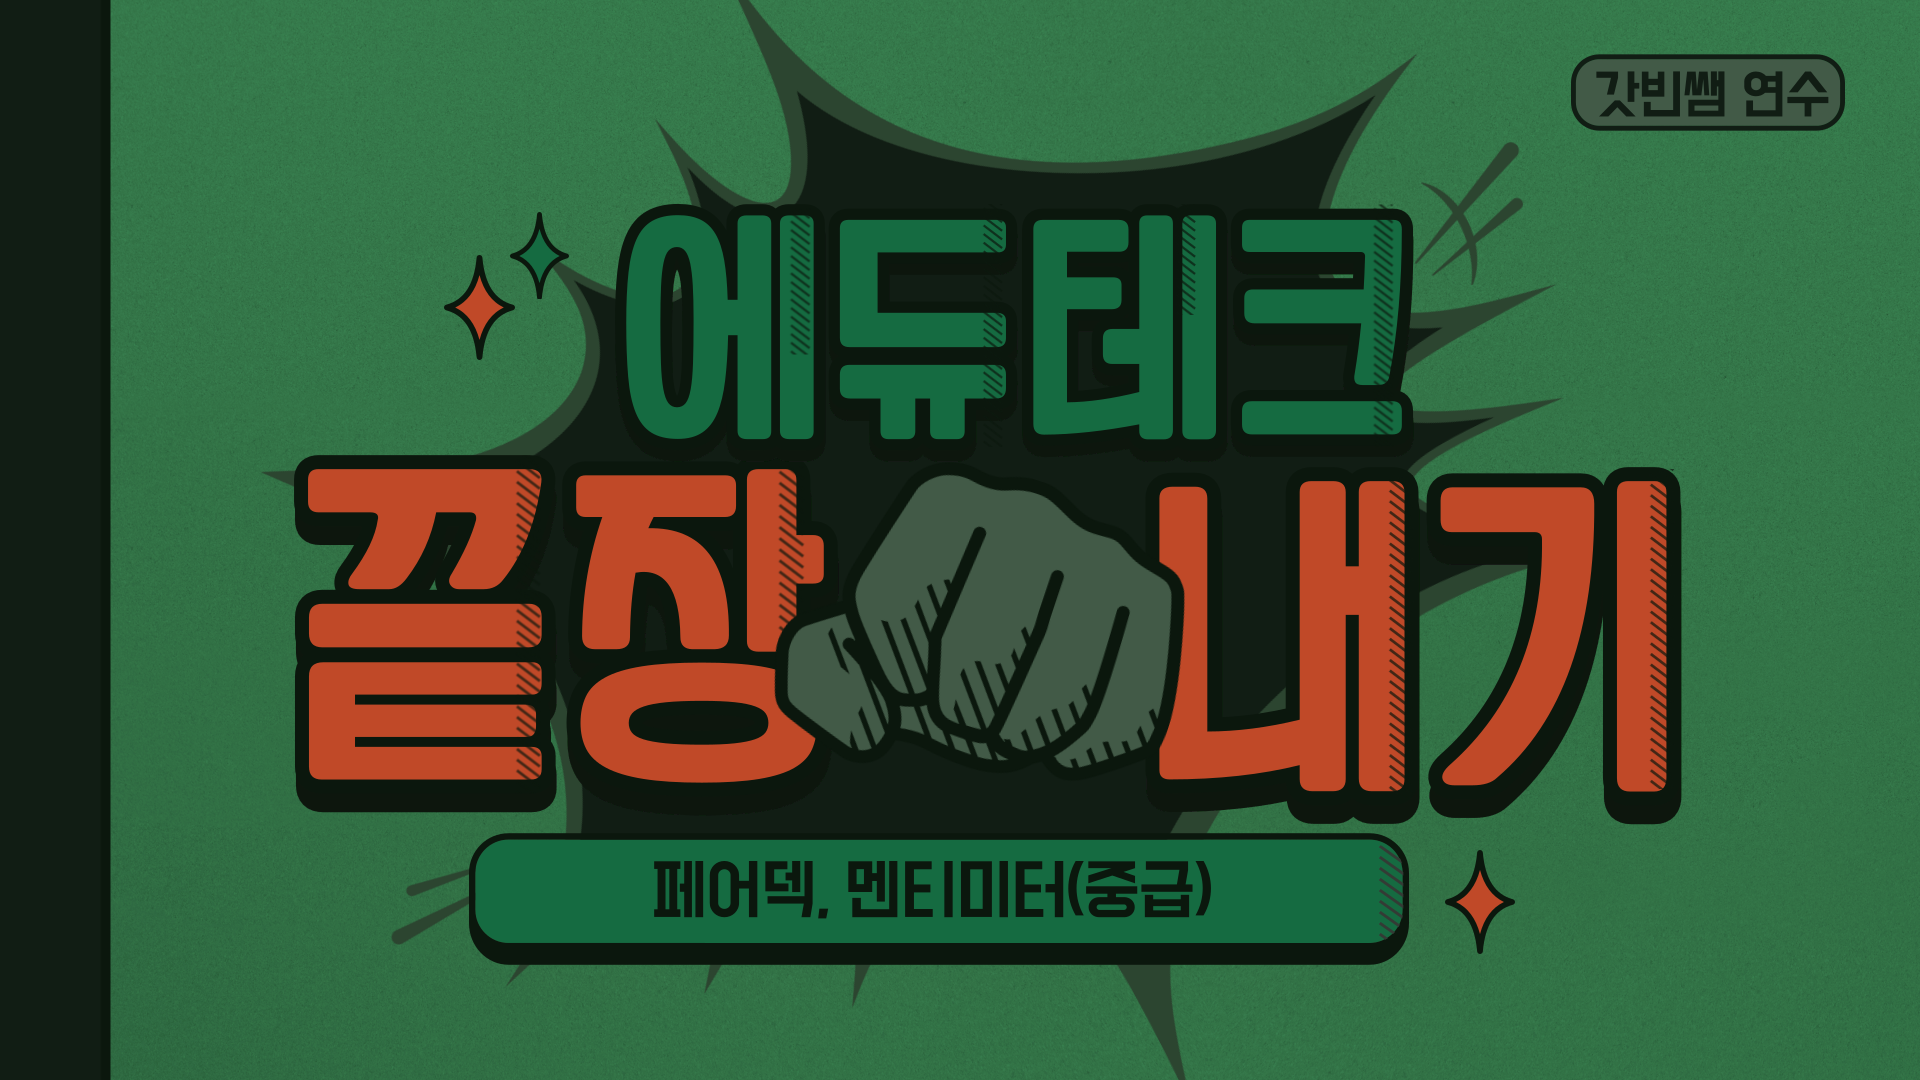 갓빈쌤과 몰입천재 에듀테크 끝장내기(중급)-페어덱, 멘티미터